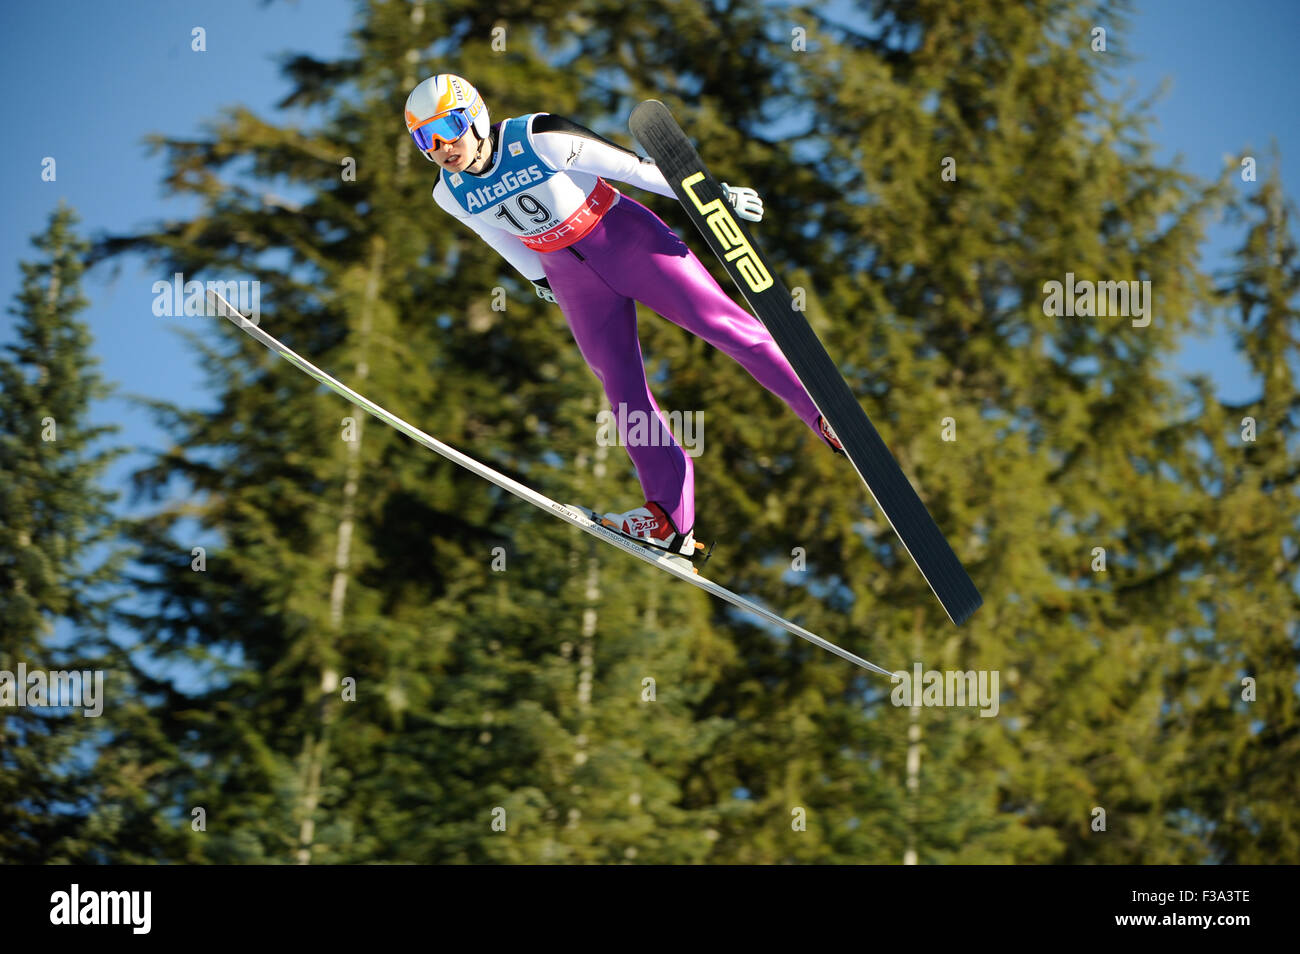 FIS Coppa del Mondo di Combinata Nordica, WHISTLER NORDIC CENTER, British Columbia, Canada, 17 gennaio 2009 - Mens ski jumping: Norihito Foto Stock